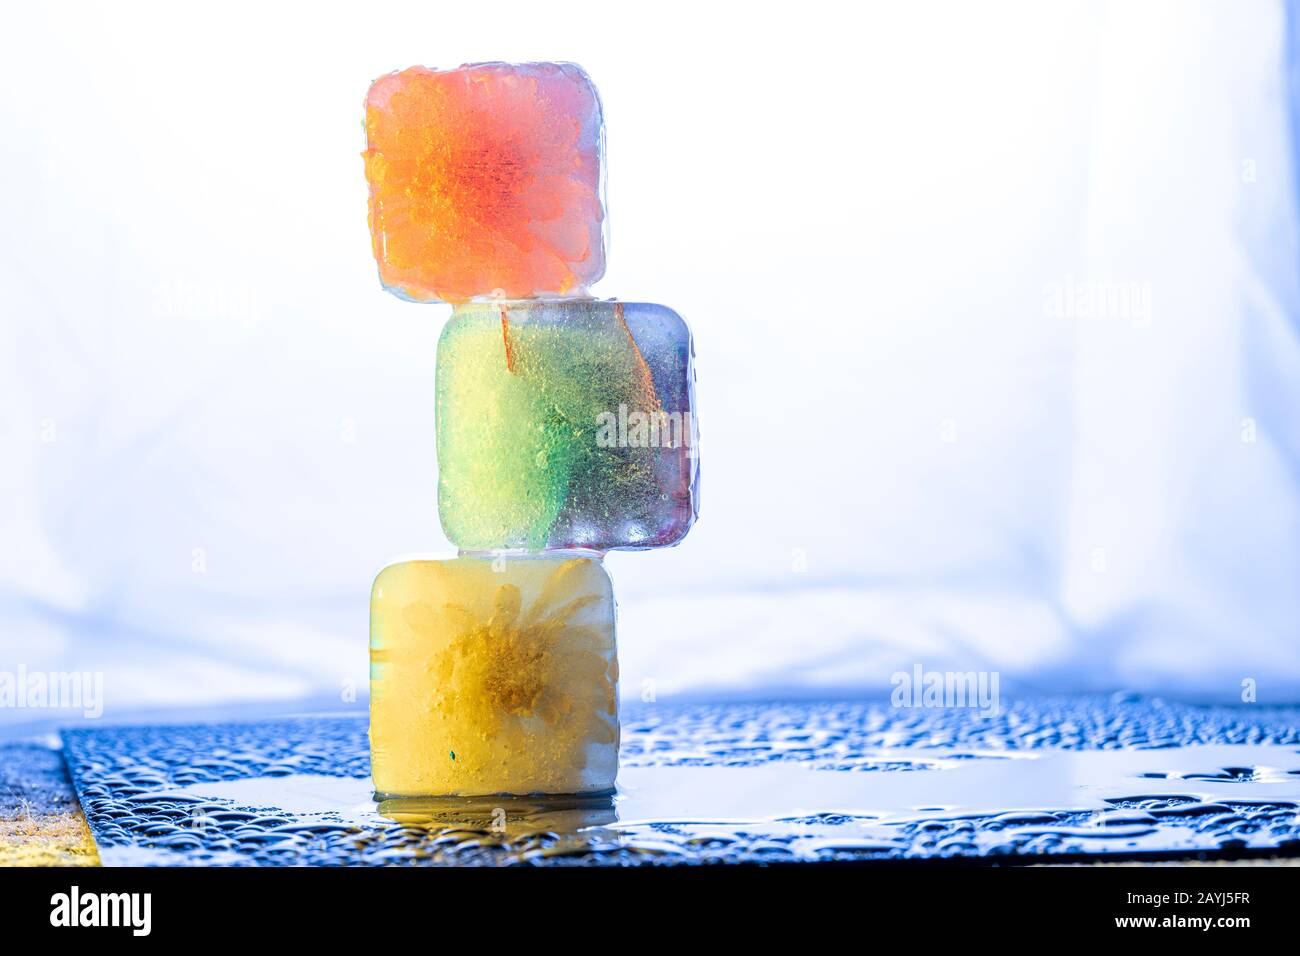 Composizione astratta con cubetti di ghiaccio colorati sovrapposti in tonalità vivaci sul piano del tavolo bagnato Foto Stock